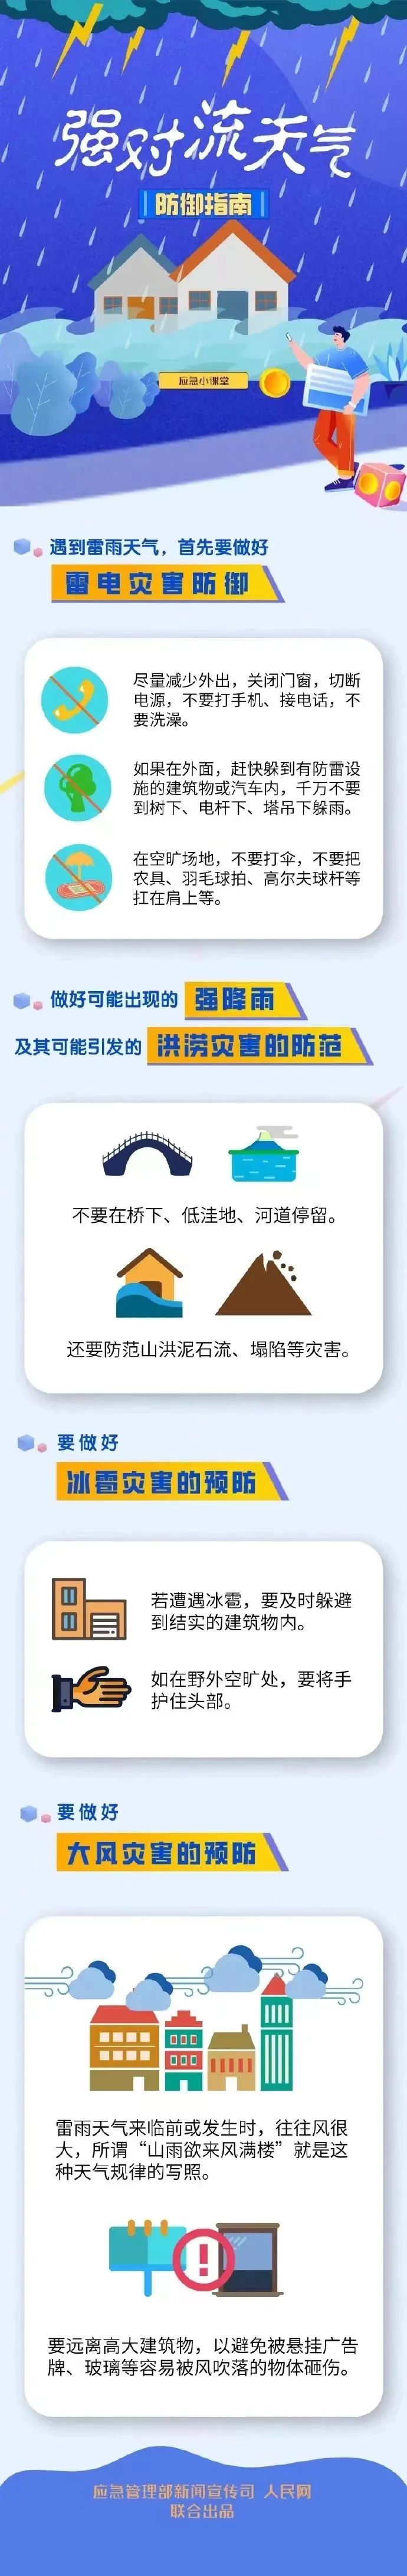 湖南芷江最新城市规划图片